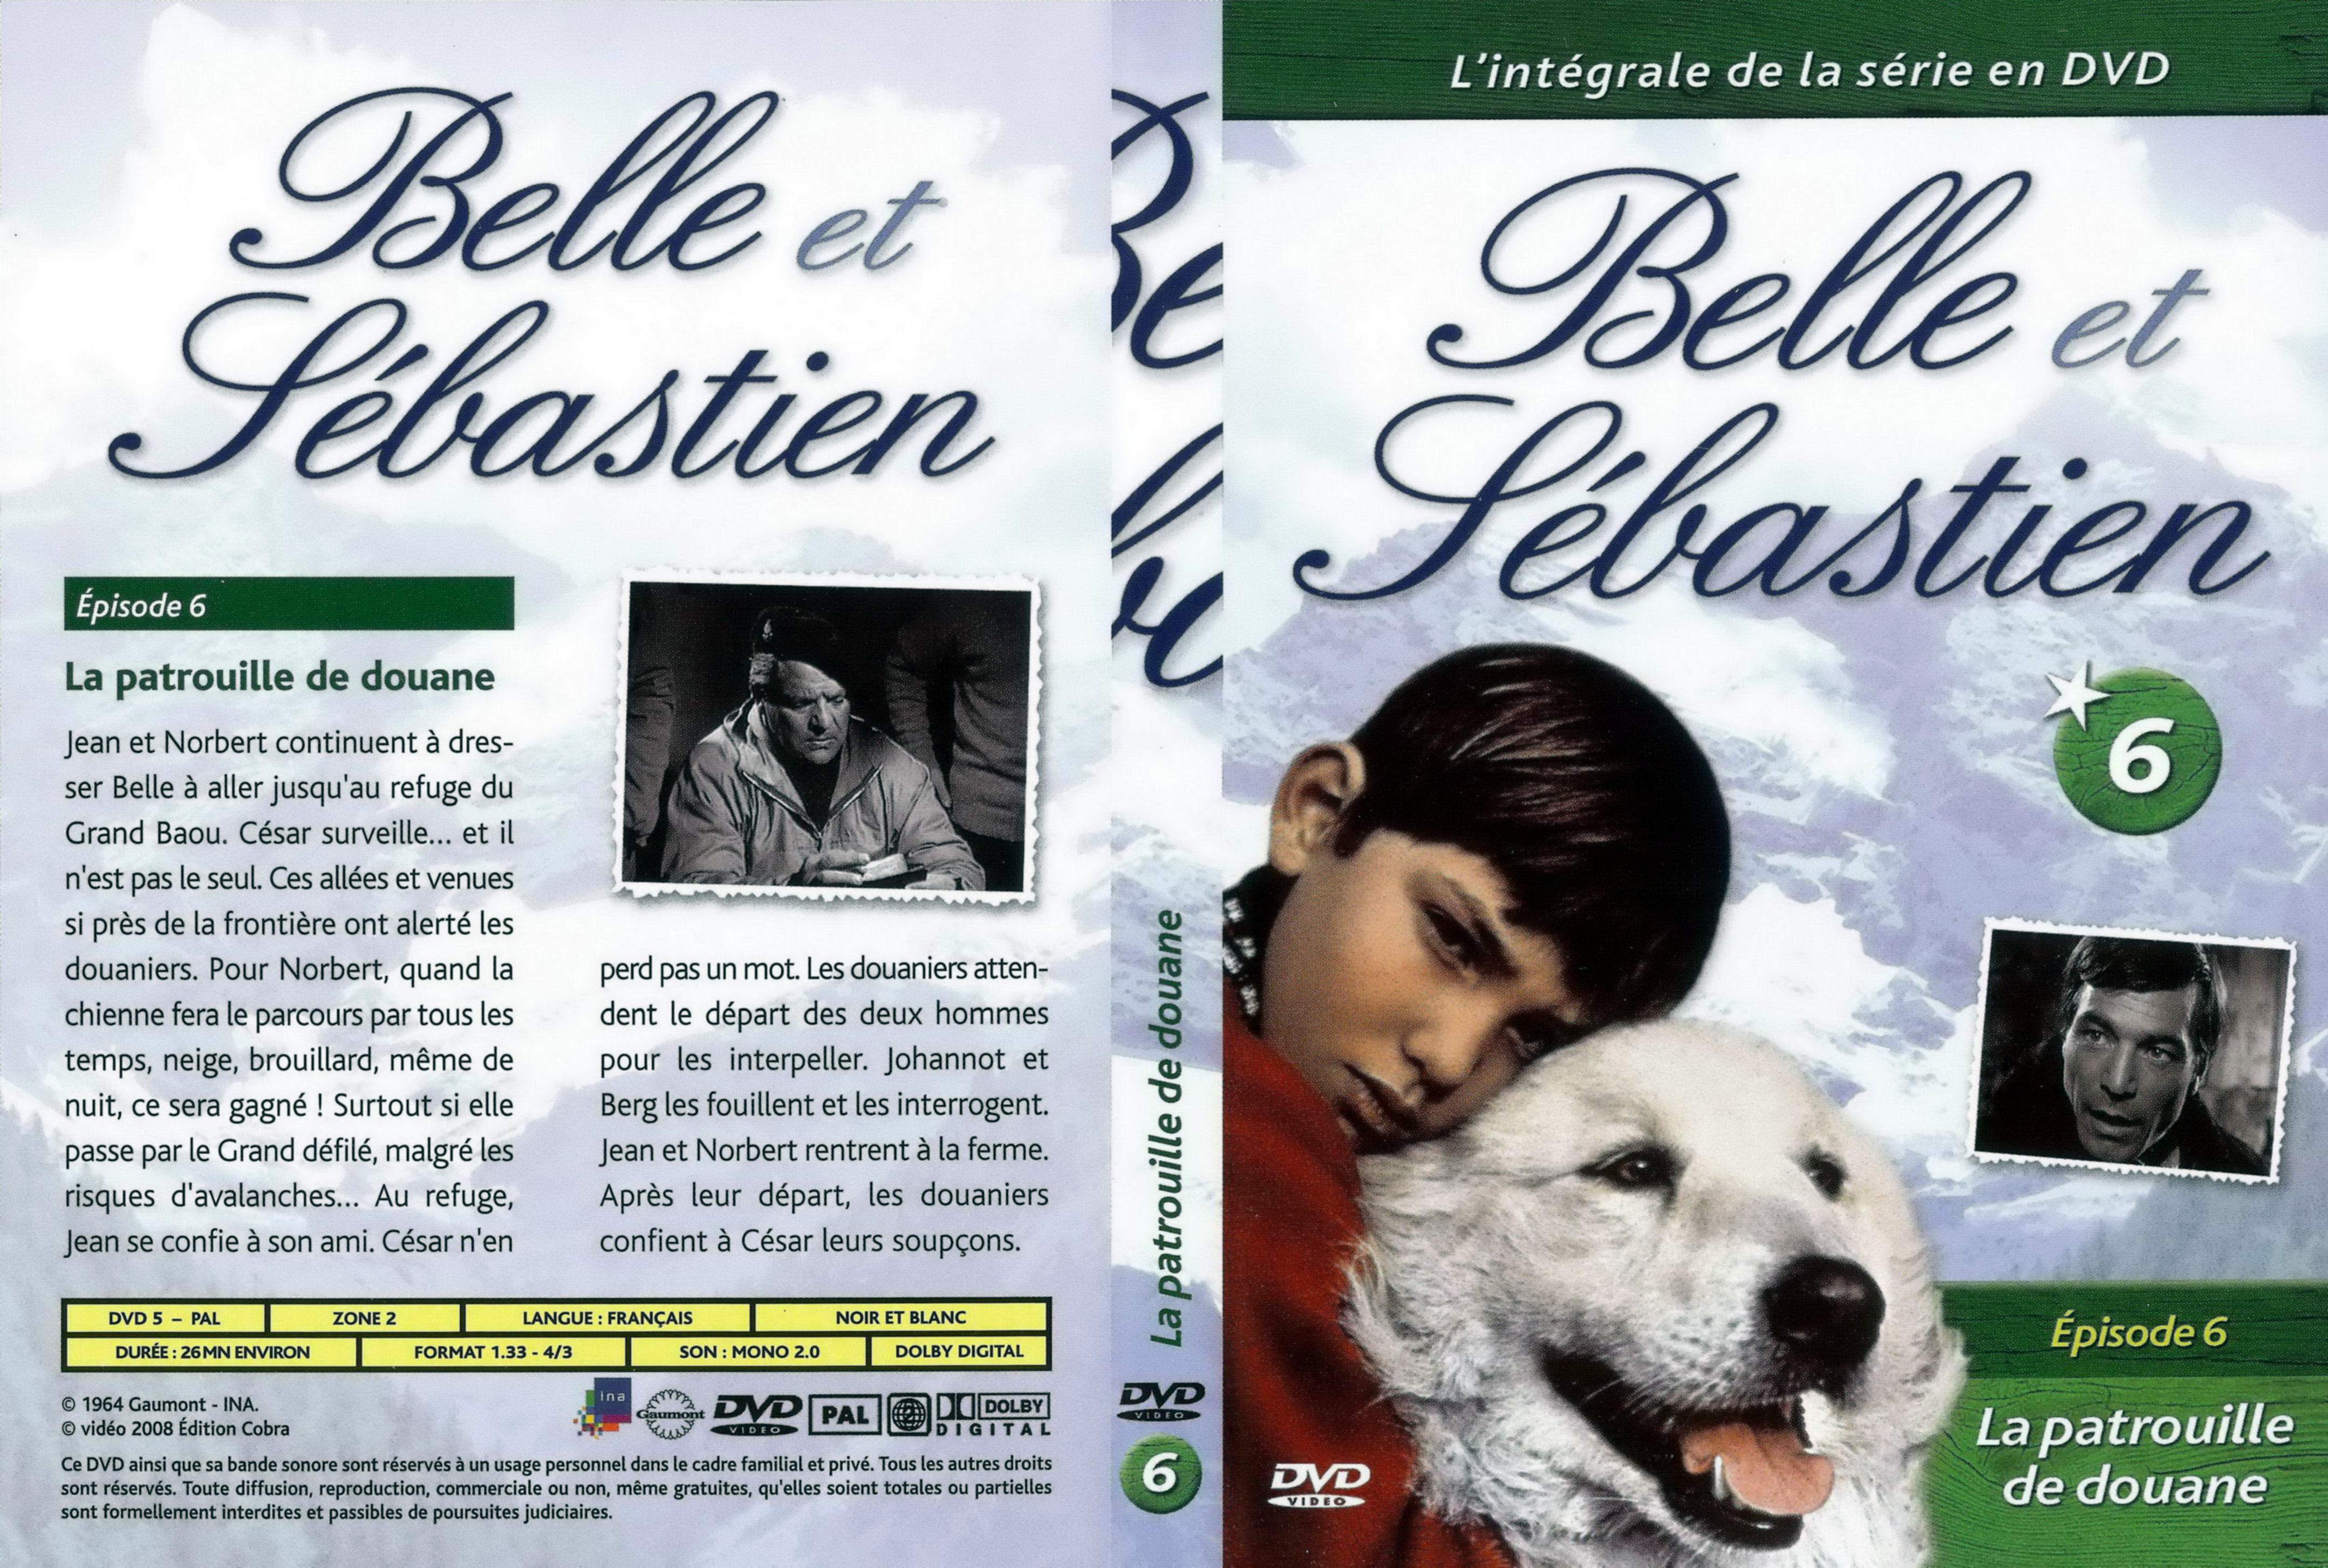 Jaquette DVD Belle et Sebastien la srie vol 06